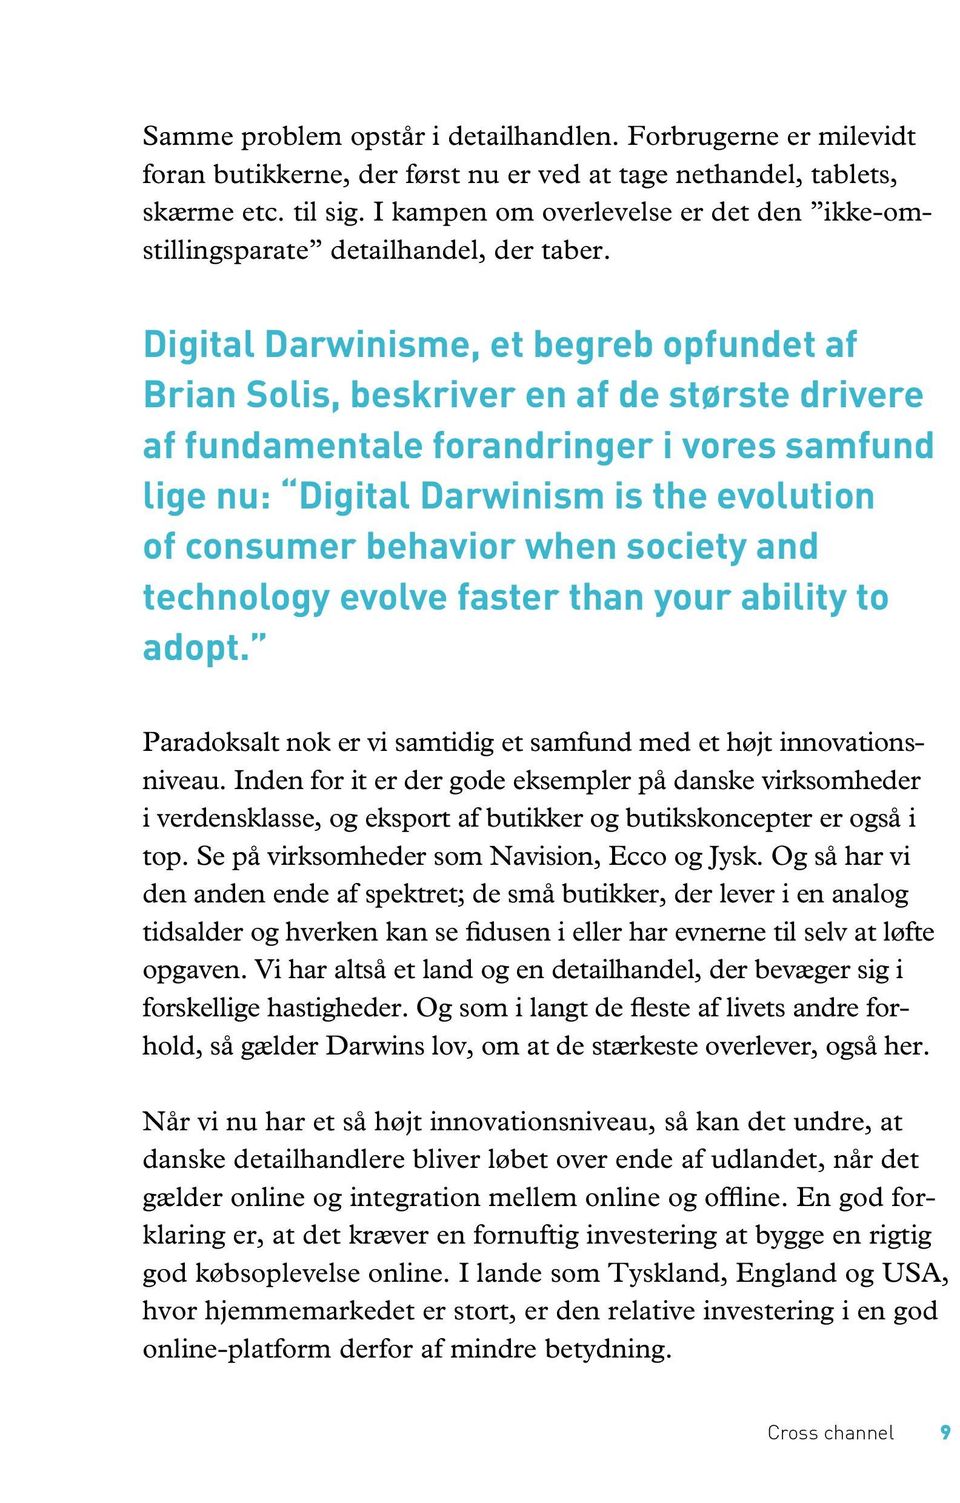 Digital Darwinisme, et begreb opfundet af Brian Solis, beskriver en af de største drivere af fundamentale forandringer i vores samfund lige nu: Digital Darwinism is the evolution of consumer behavior